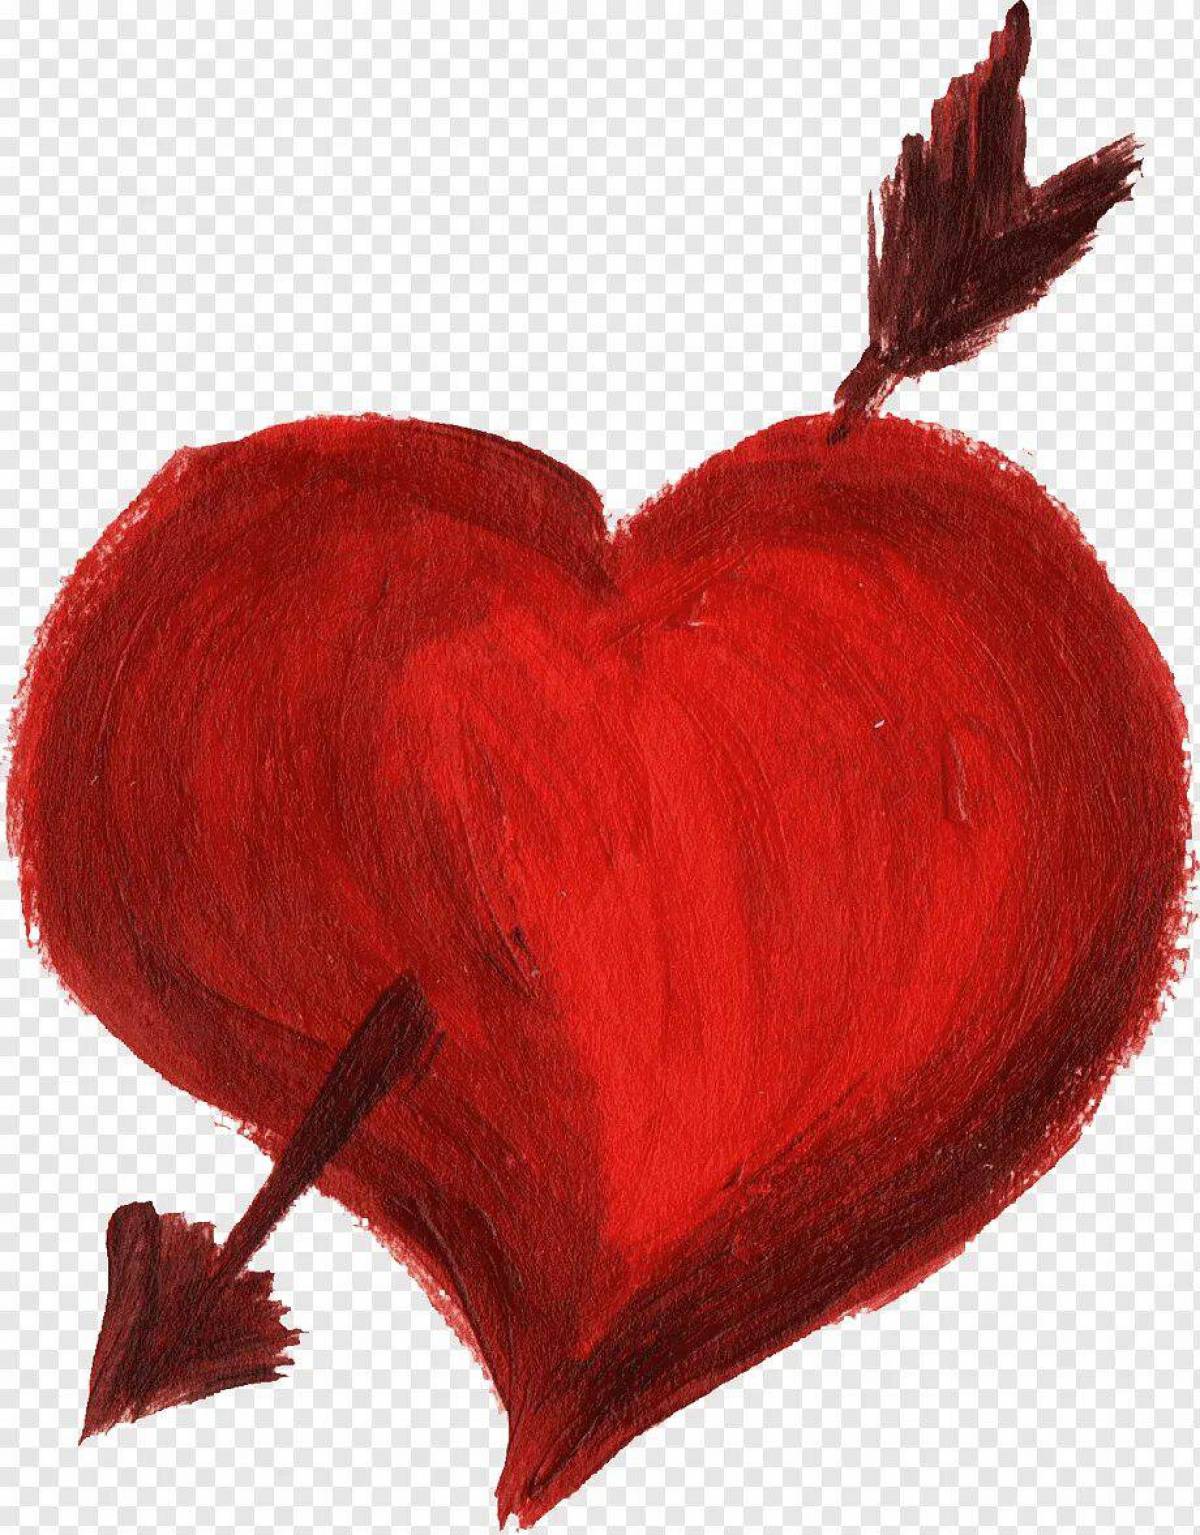 Картинка сердце нарисованное